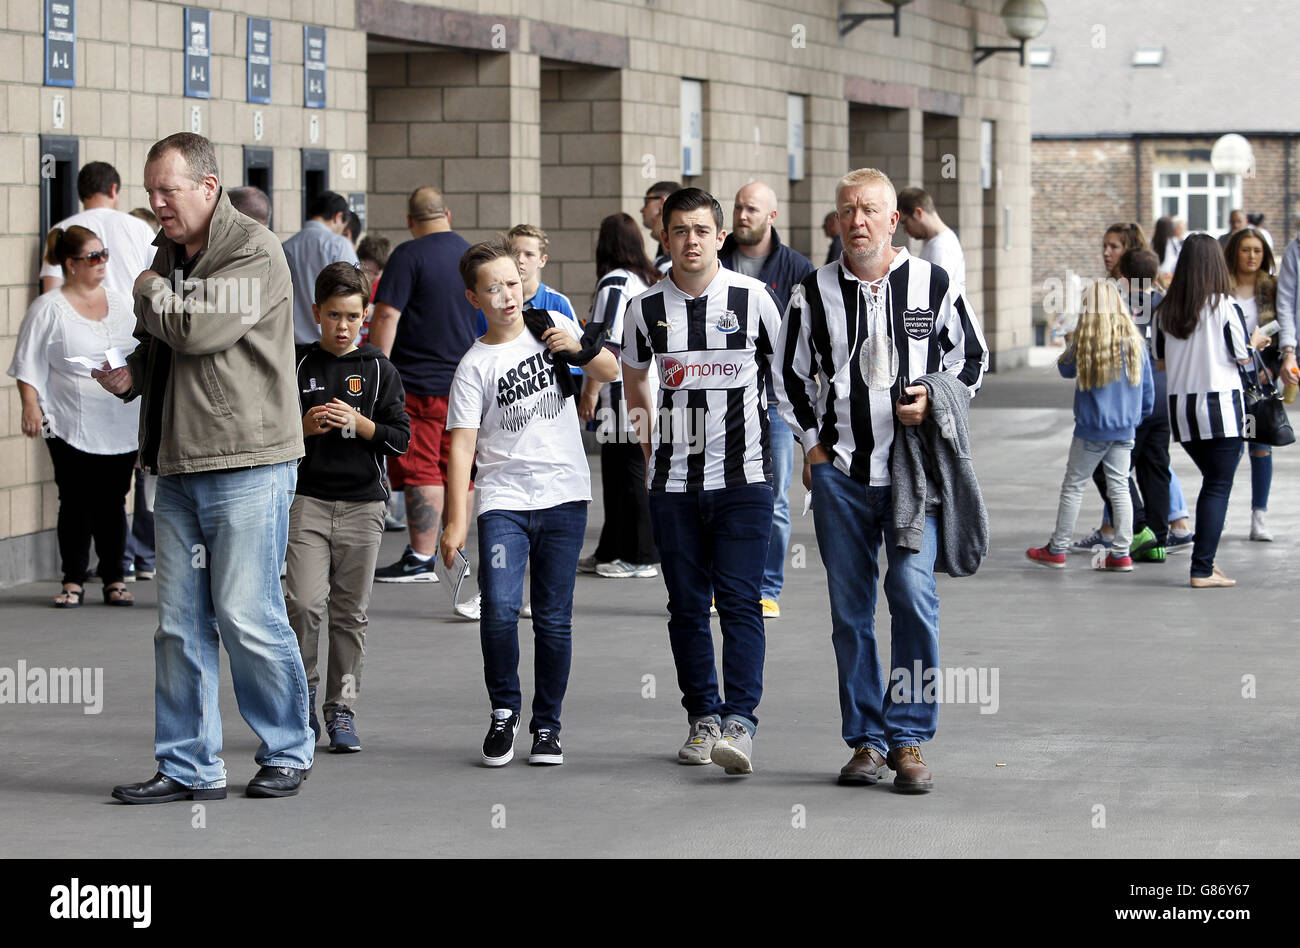 Soccer - Barclays Premier League - Newcastle United v Southampton - St James' Park. Fans outside St James' Park Stock Photo